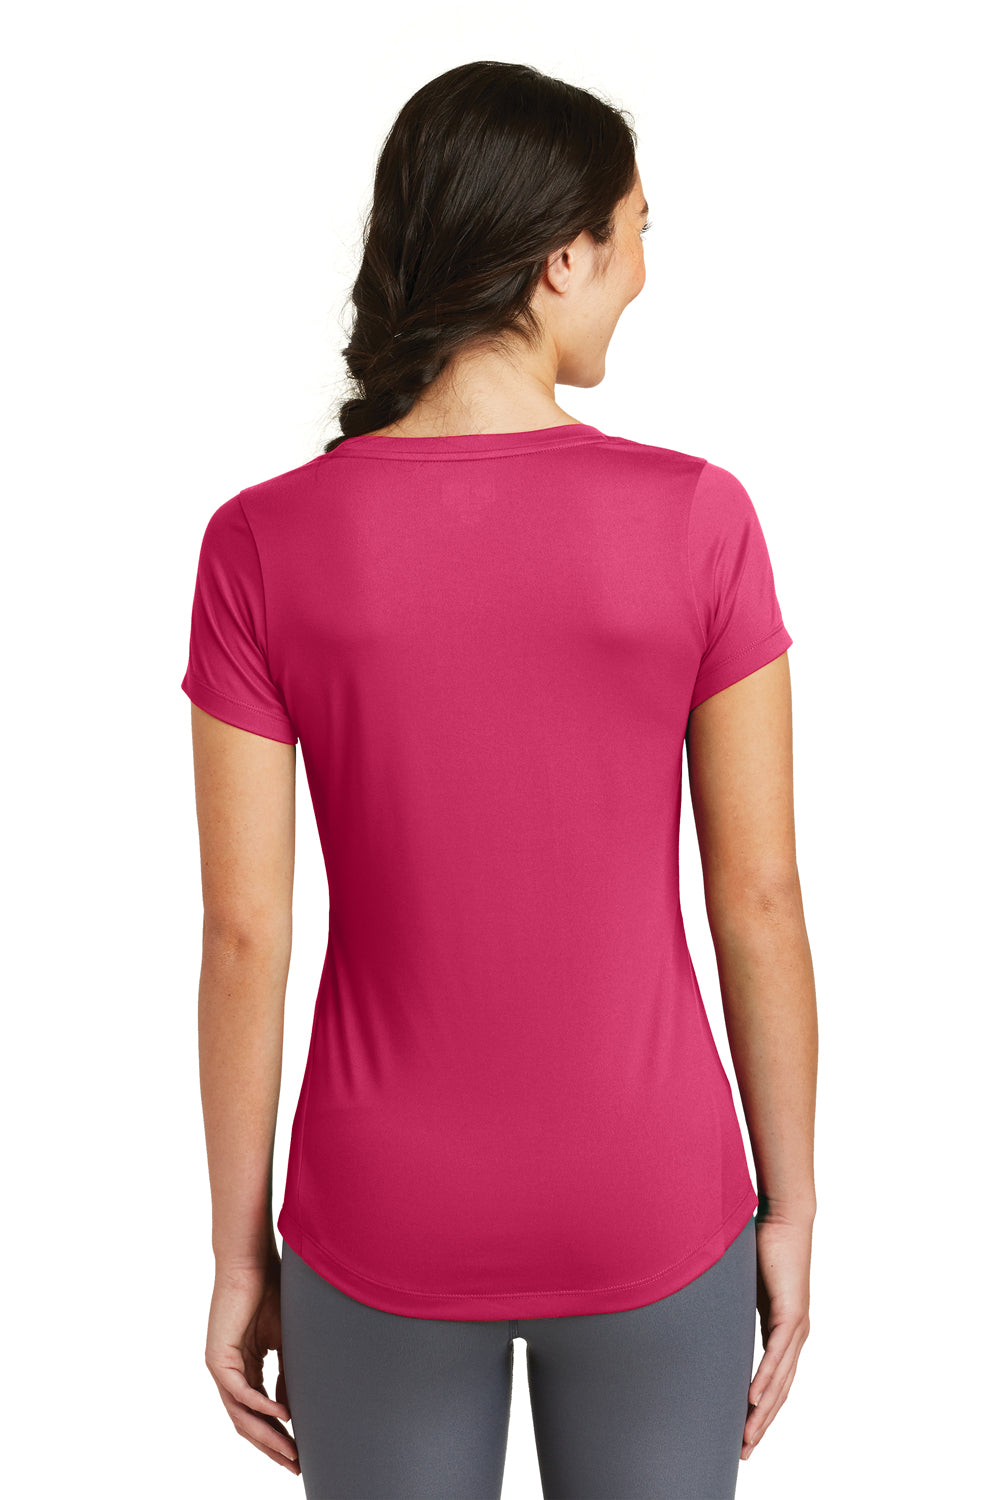 New Era LNEA200 Womens Series Performance Jersey Moisture Wicking Short Sleeve Crewneck T-Shirt Deep Pink Back